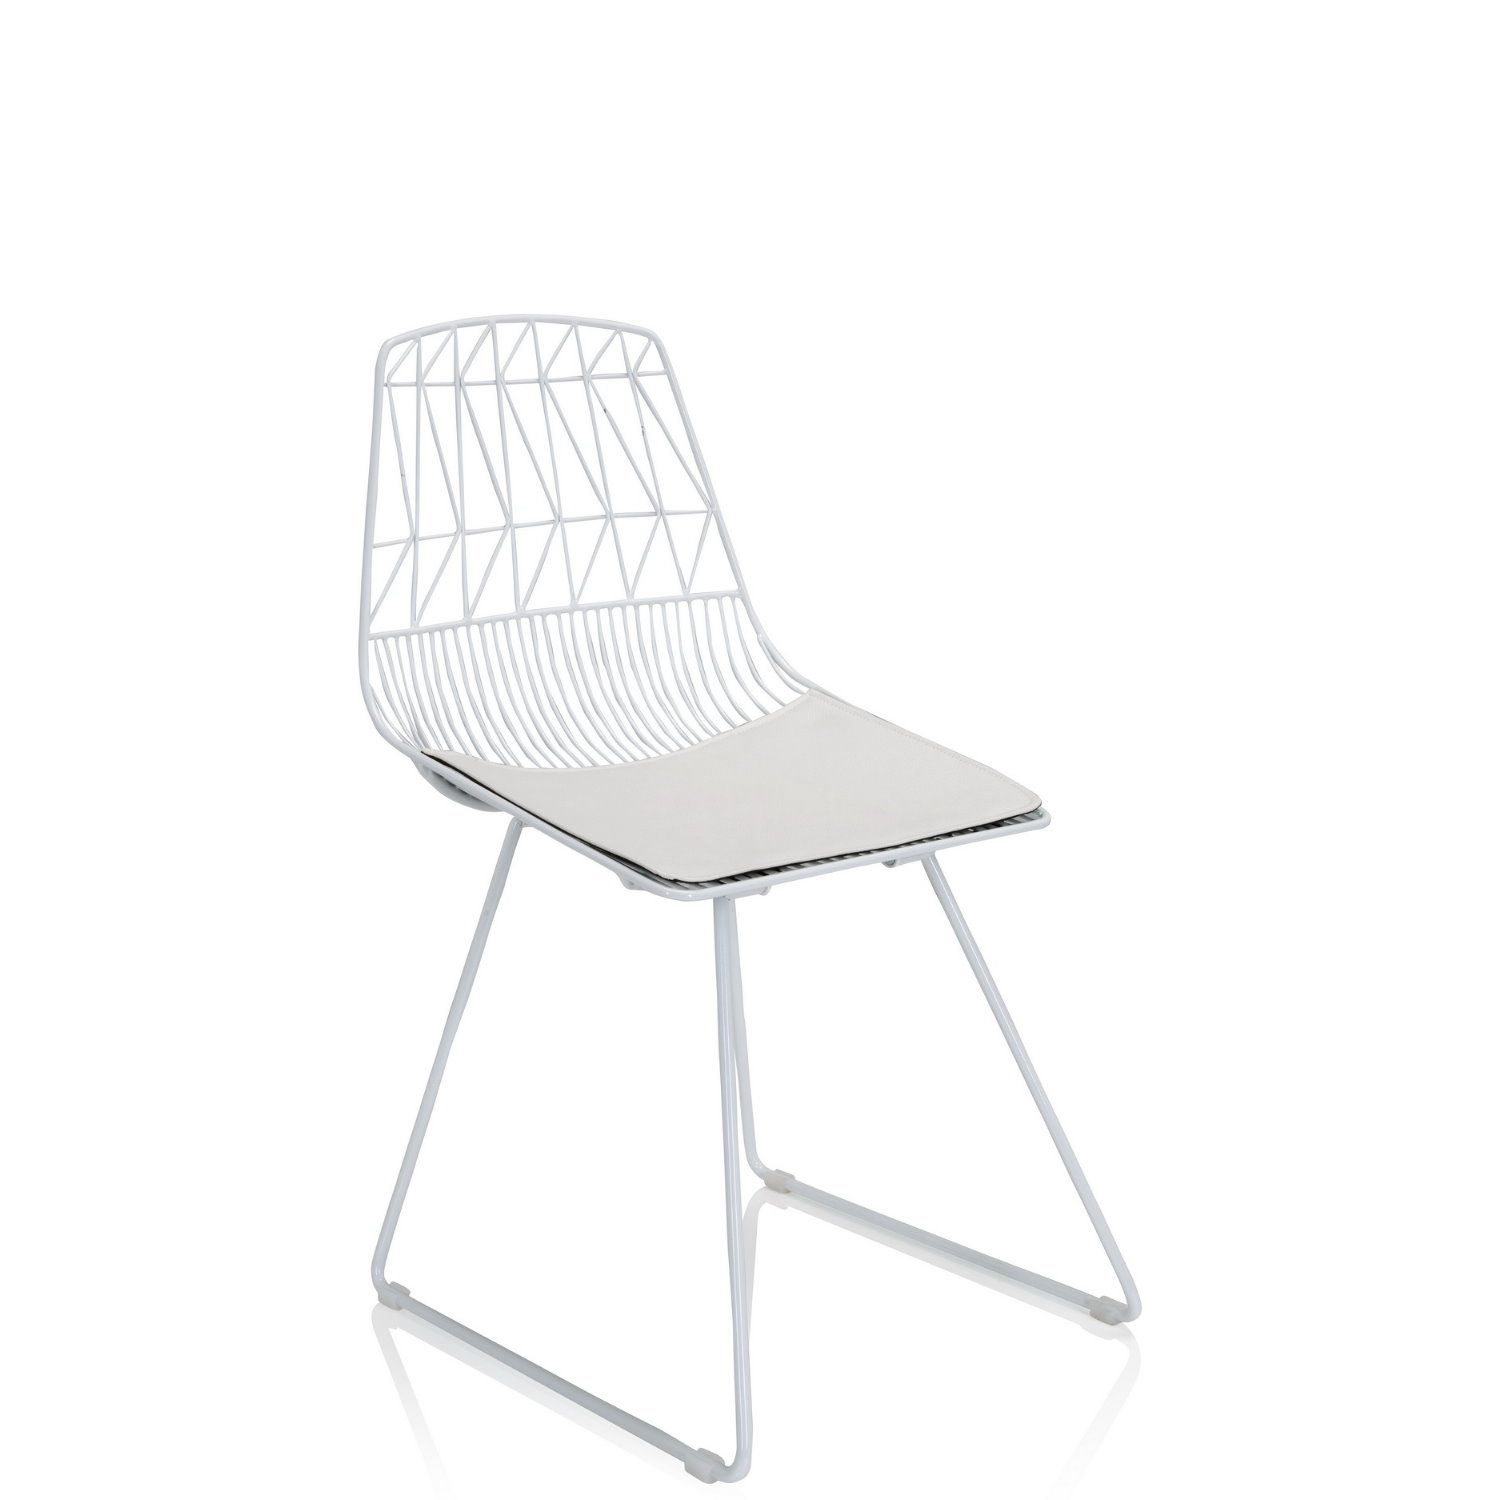 Metall-Stuhl / Living Stuhl WIREA mit Sitzkissen weiß hjh OFFICE